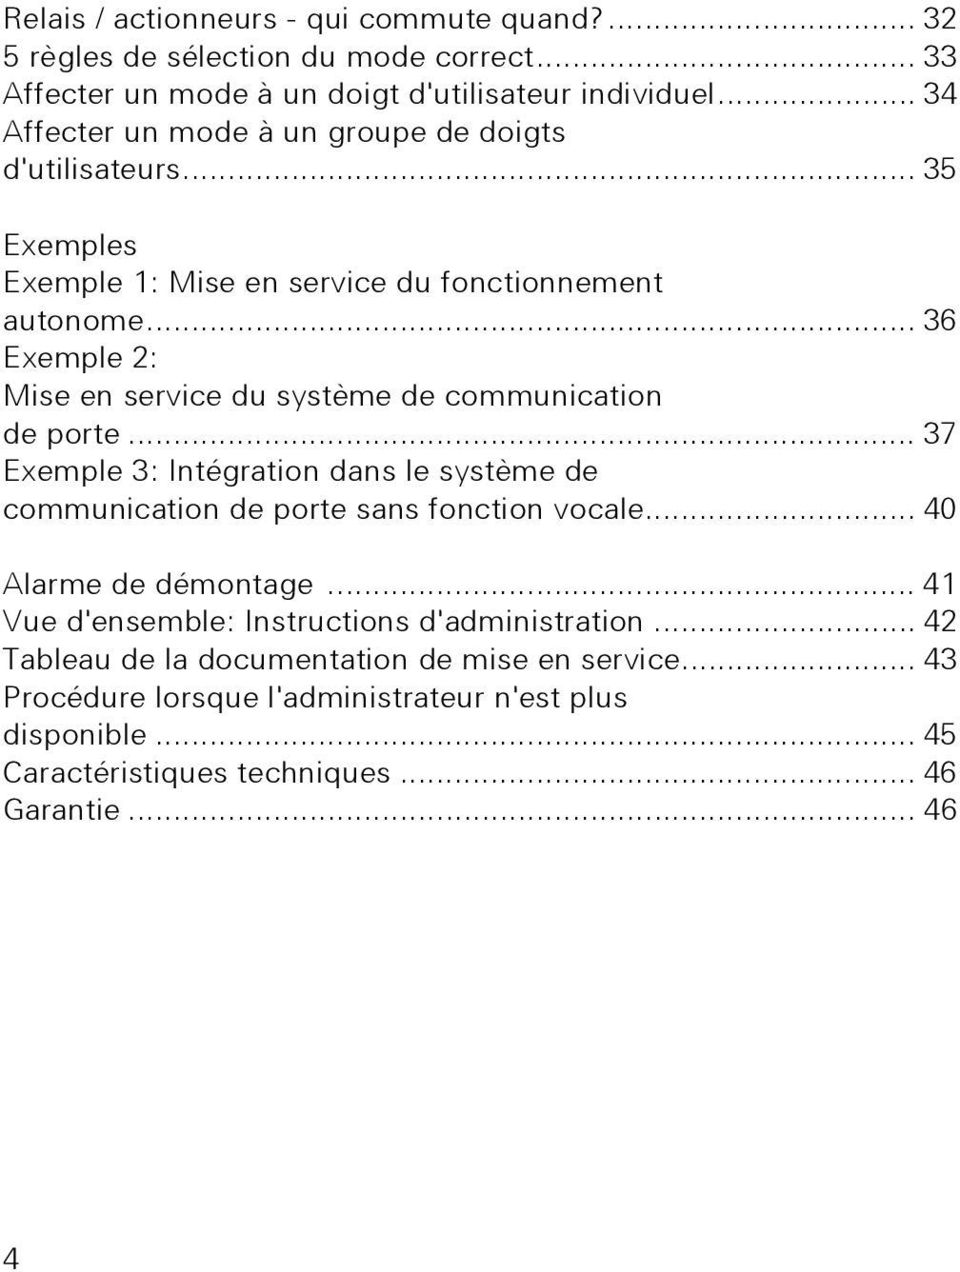 .. 36 Exemple : Mise en service du système de communication de porte... 37 Exemple 3: Intégration dans le système de communication de porte sans fonction vocale.